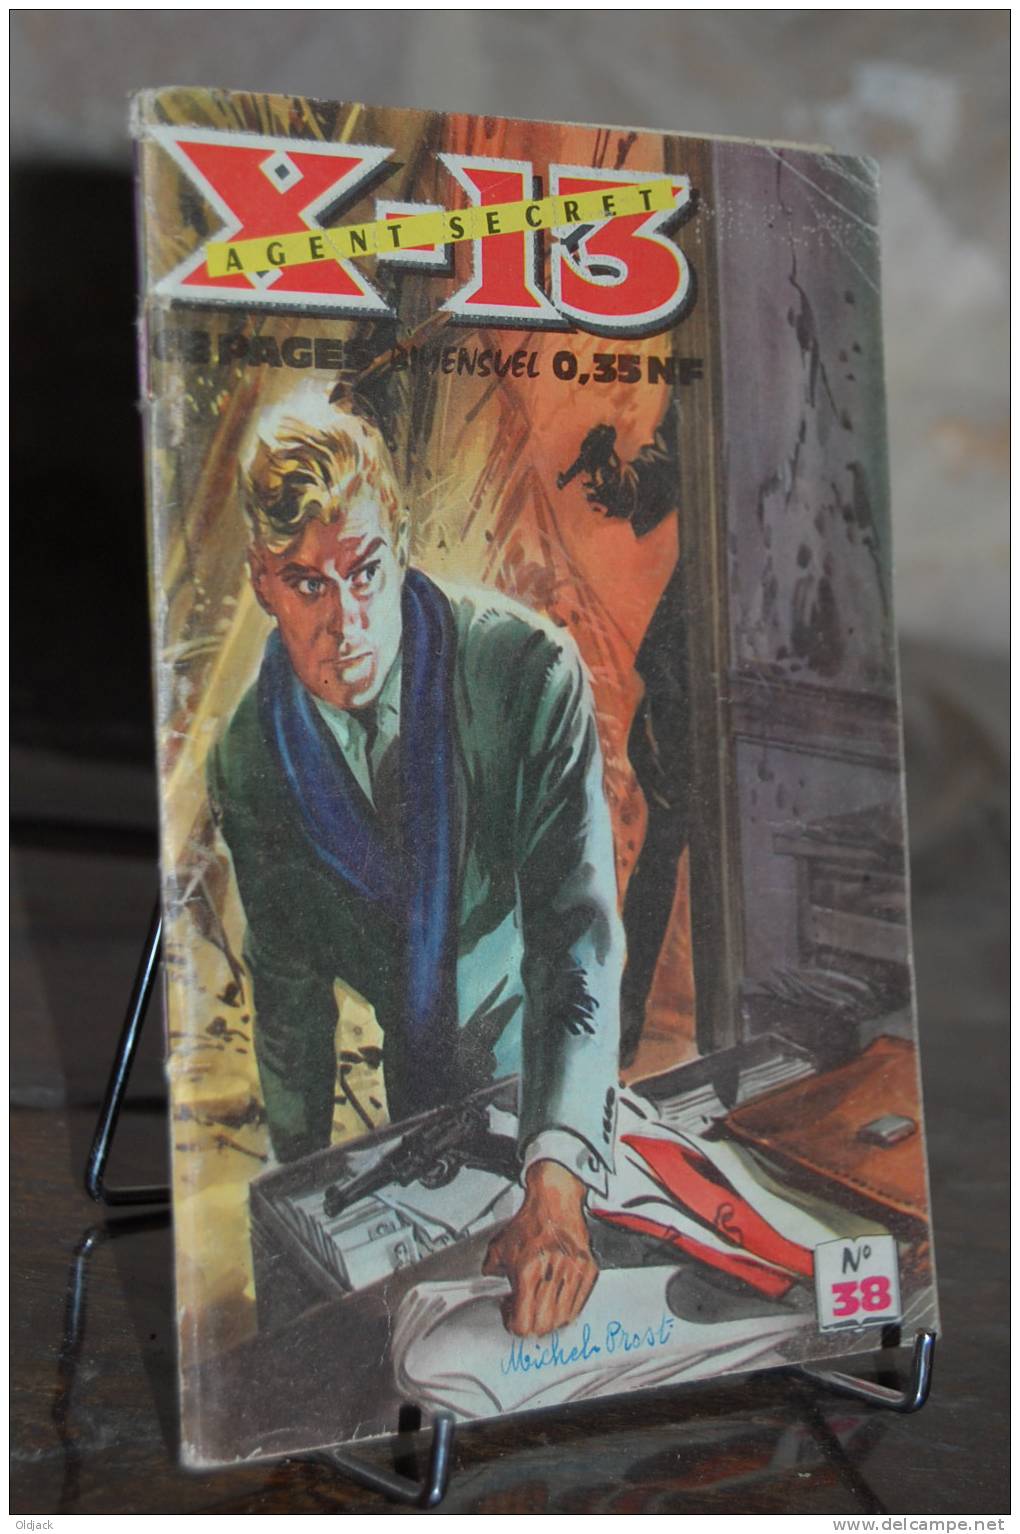 X-13 Agent Secret  N°38 (plato D) - Kleinformat